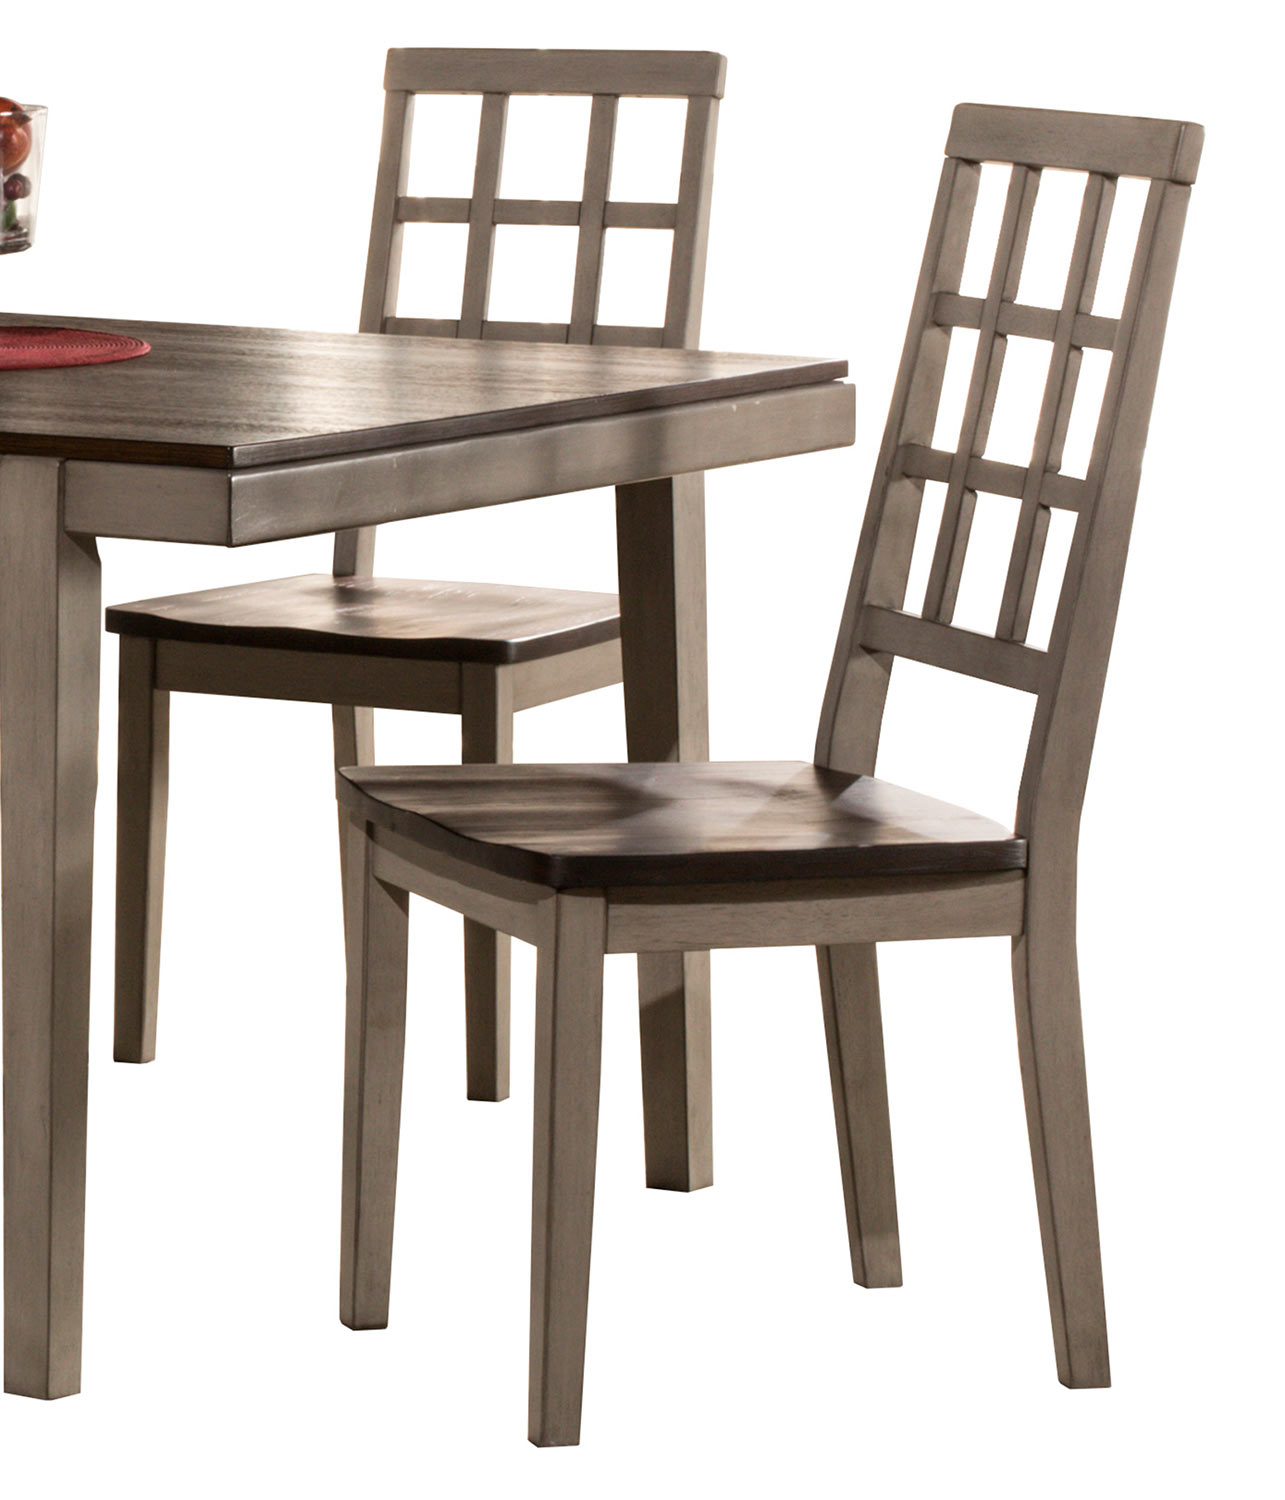 Hillsdale Garden Park Dining Chair - Gray/Espresso